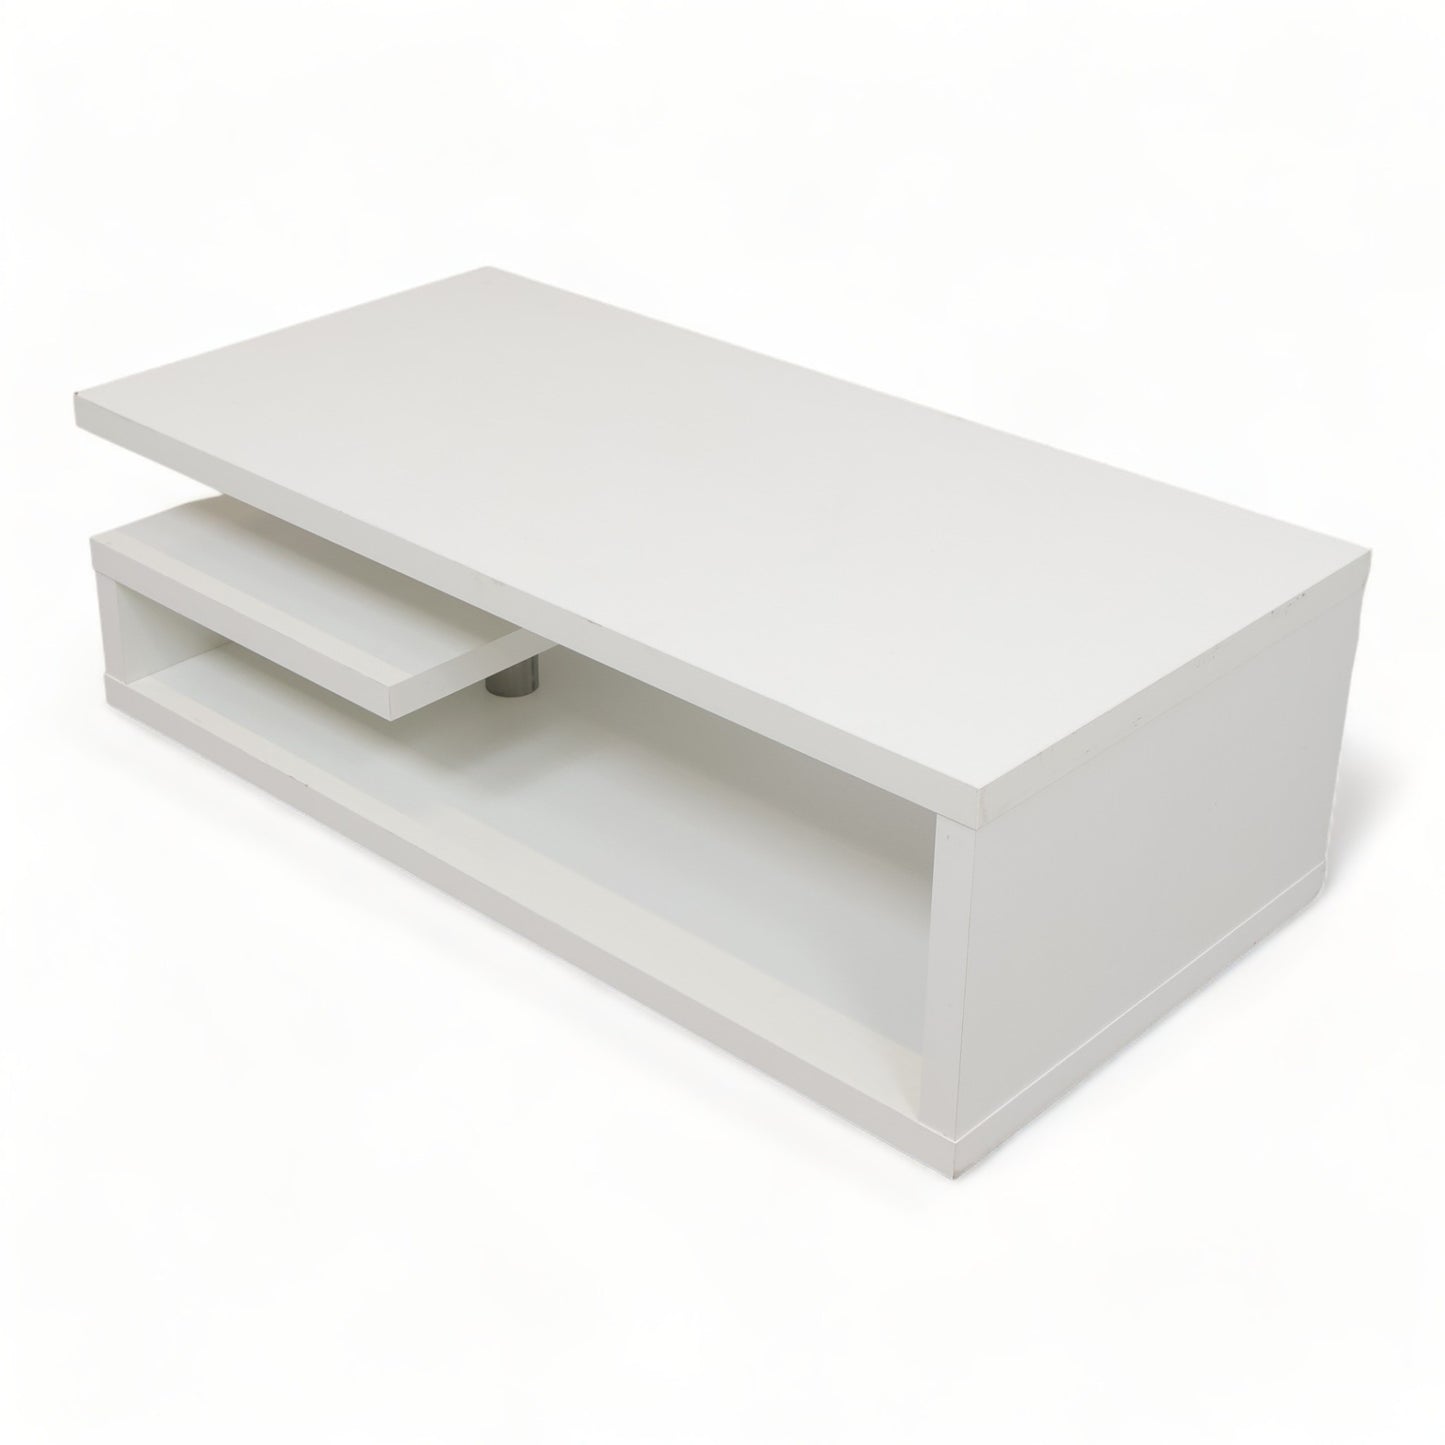 Kvalitetssikret | Køln sofabord stor, 120x60cm